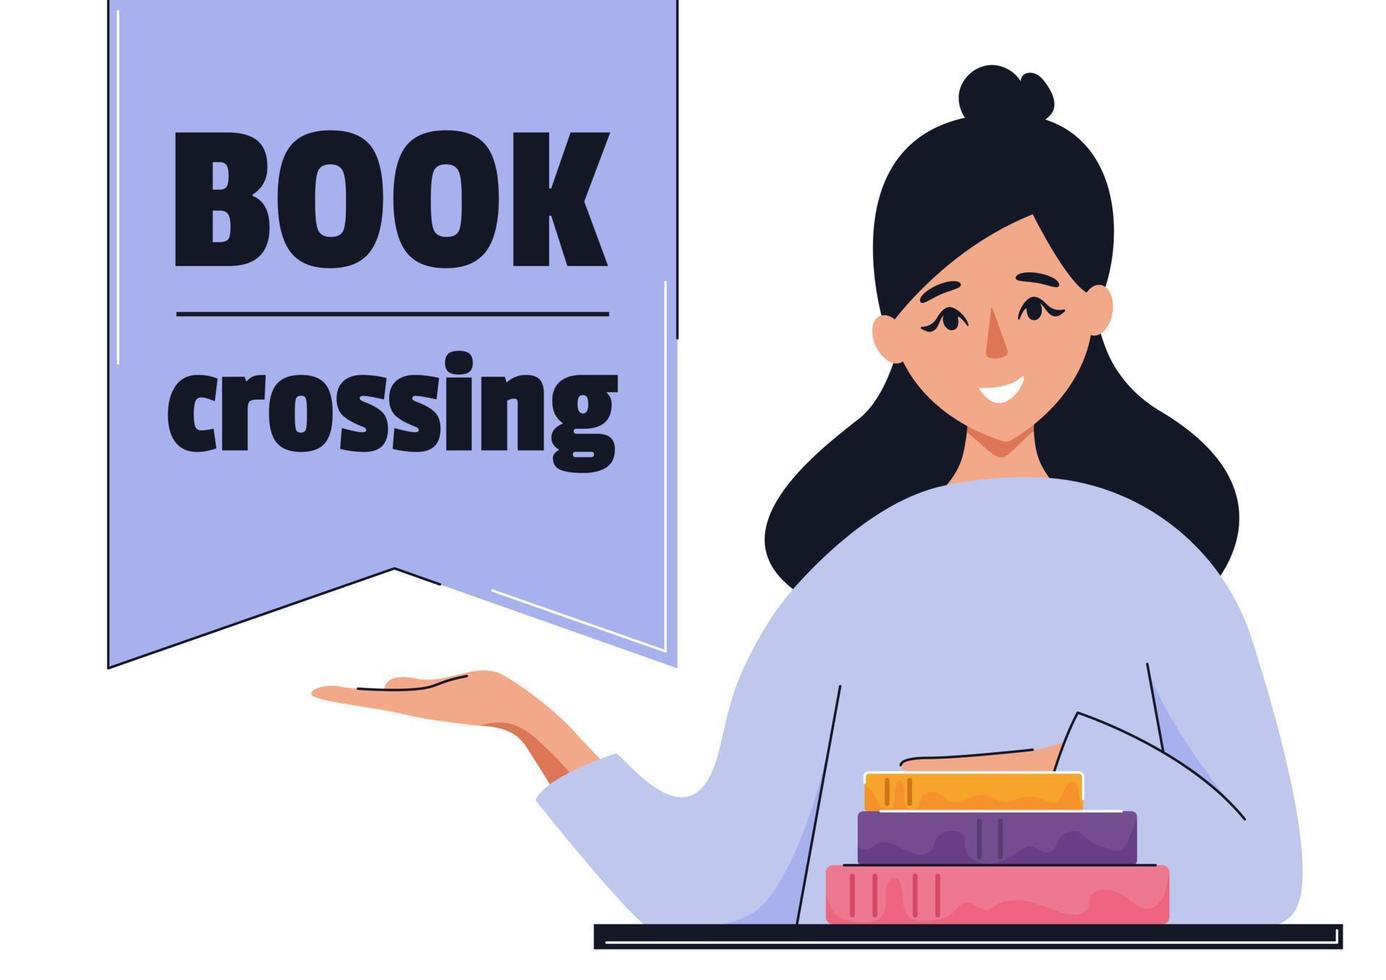 bookcrossing dag spandoek. concept van uitwisseling boeken, opleiding, lezing, ontwikkeling. geïsoleerd vector illustratie.